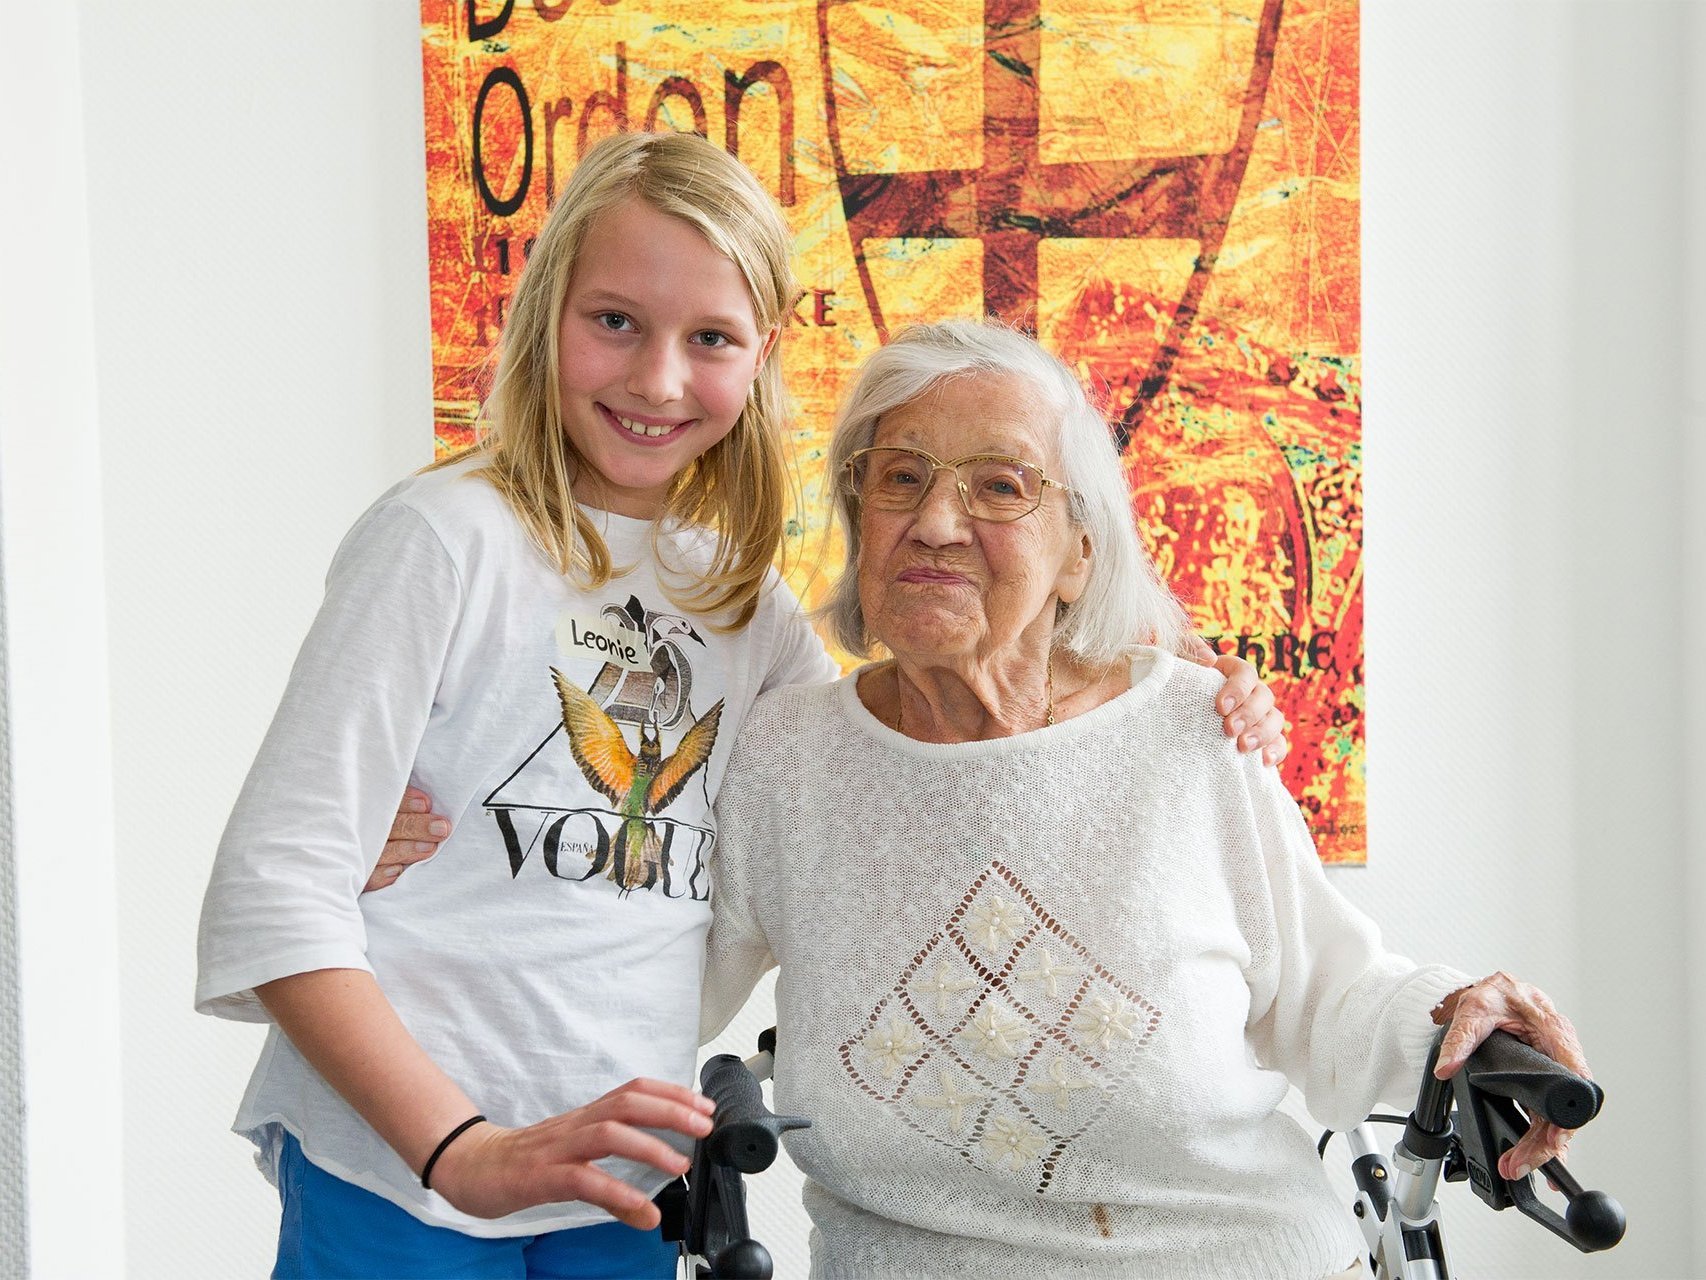 Besuch: In junges Mädchen steht neben einer Frau im Rollstuhl - halten sich gegenseitig im Arm